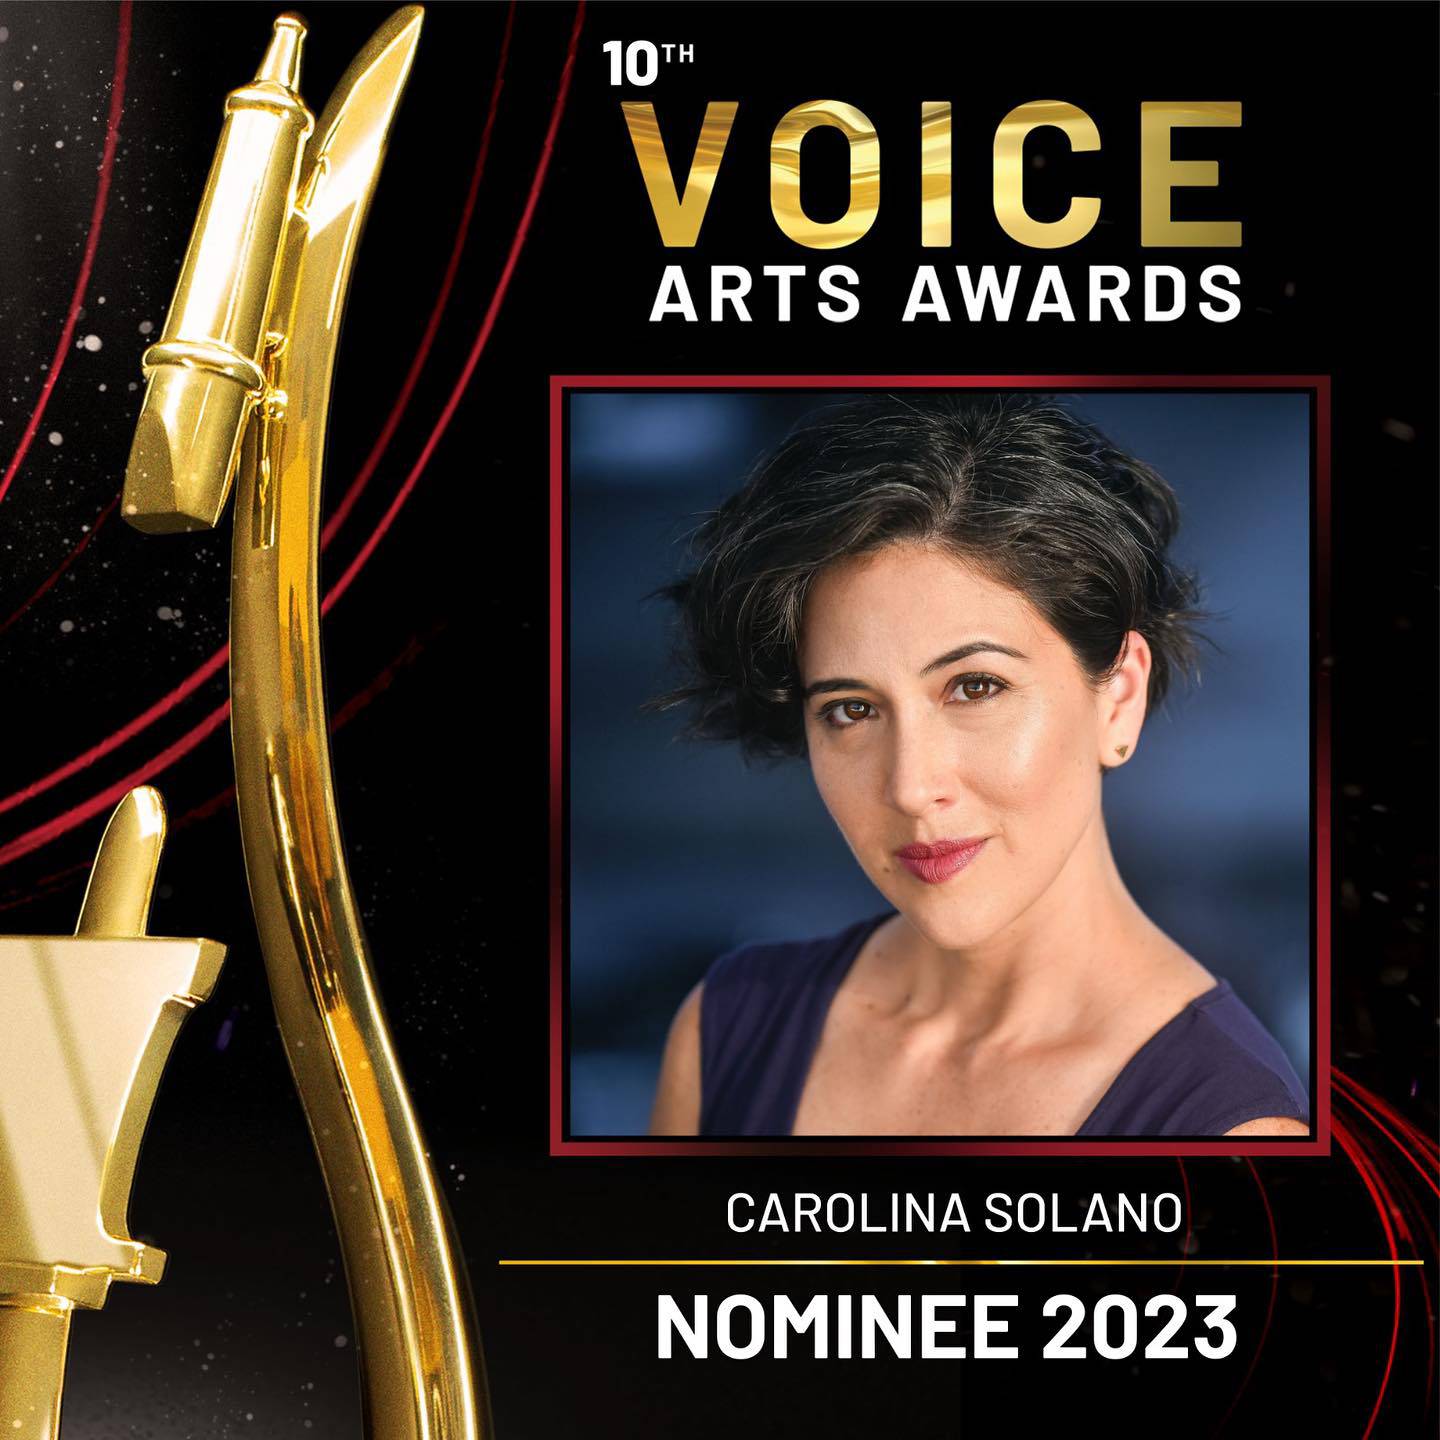 Locutores ticos nominados a los Voice Arts Awards 2023